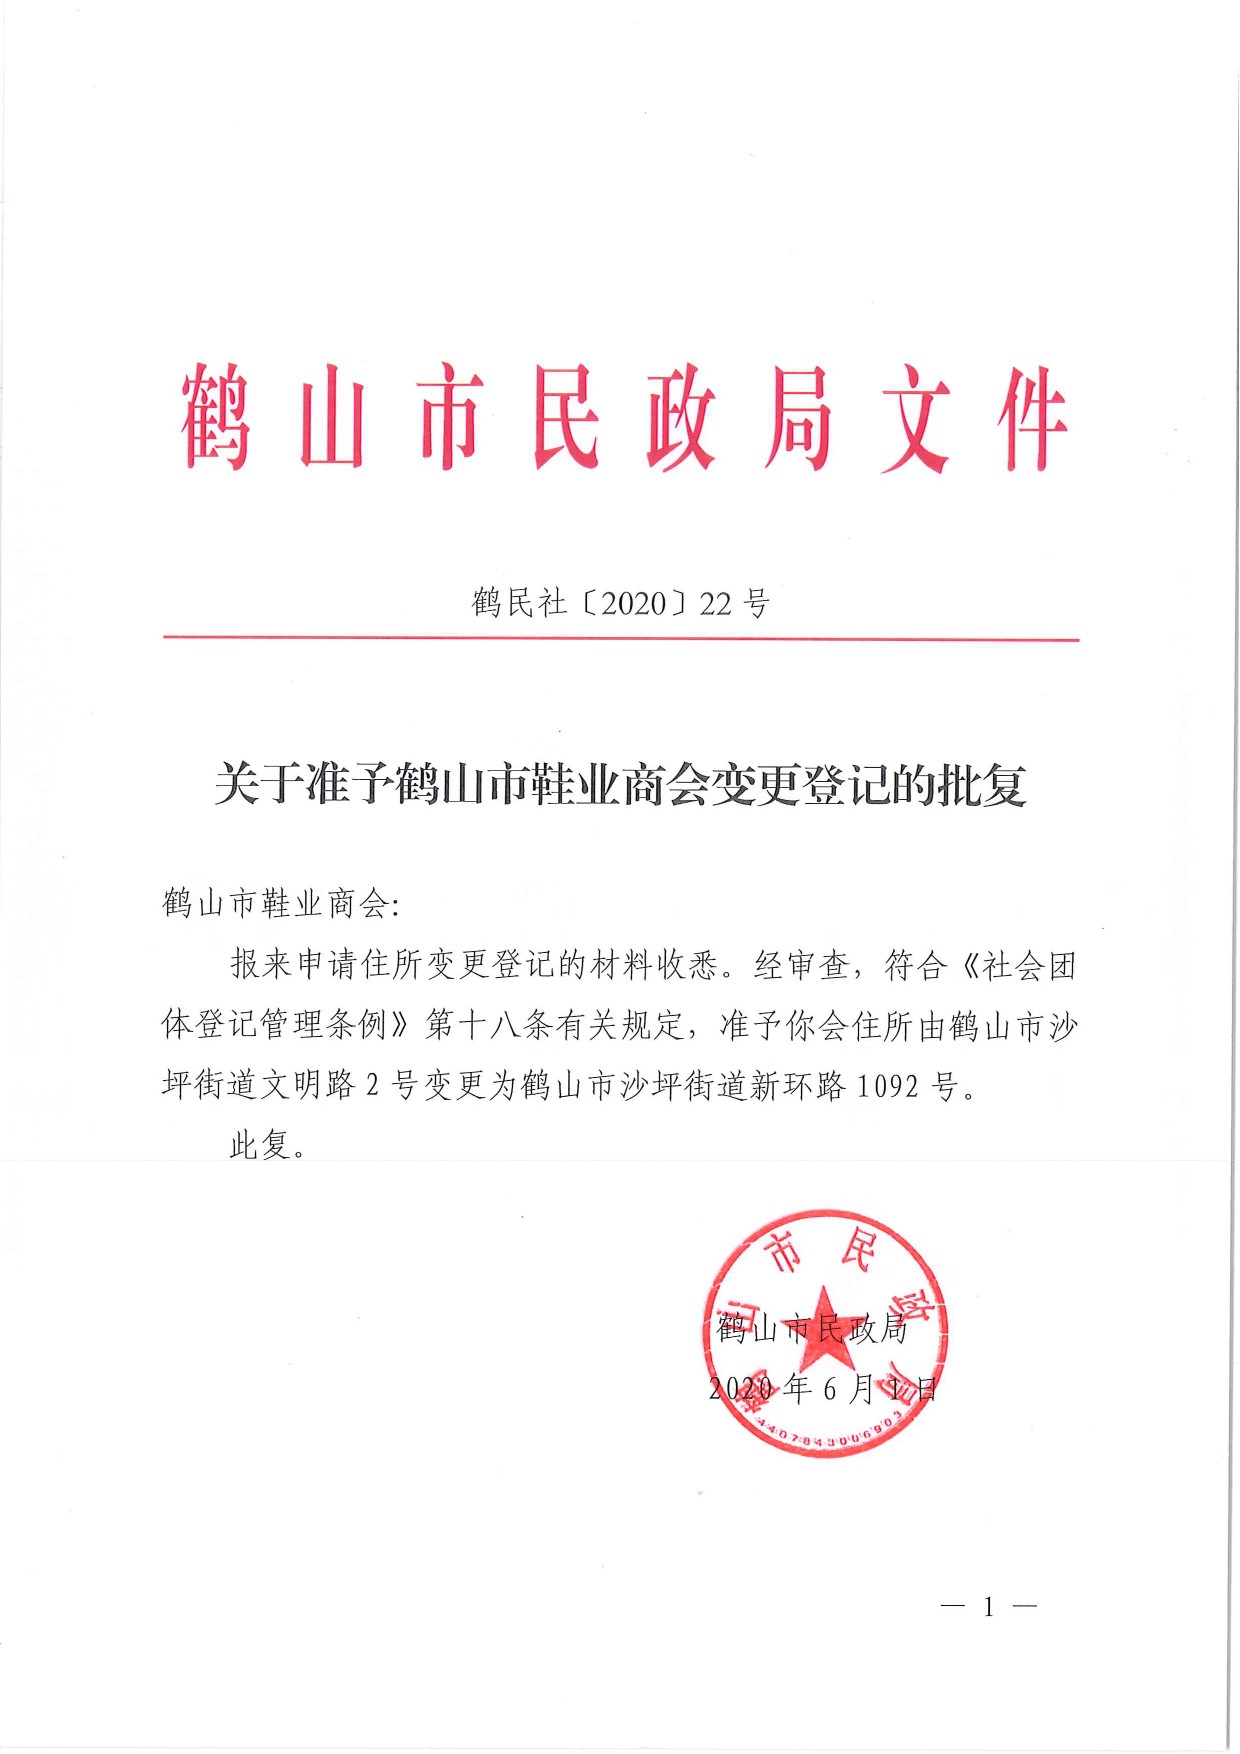 鹤民社〔2020〕22号关于准予鹤山市鞋业商会变更登记的批复-1.jpg